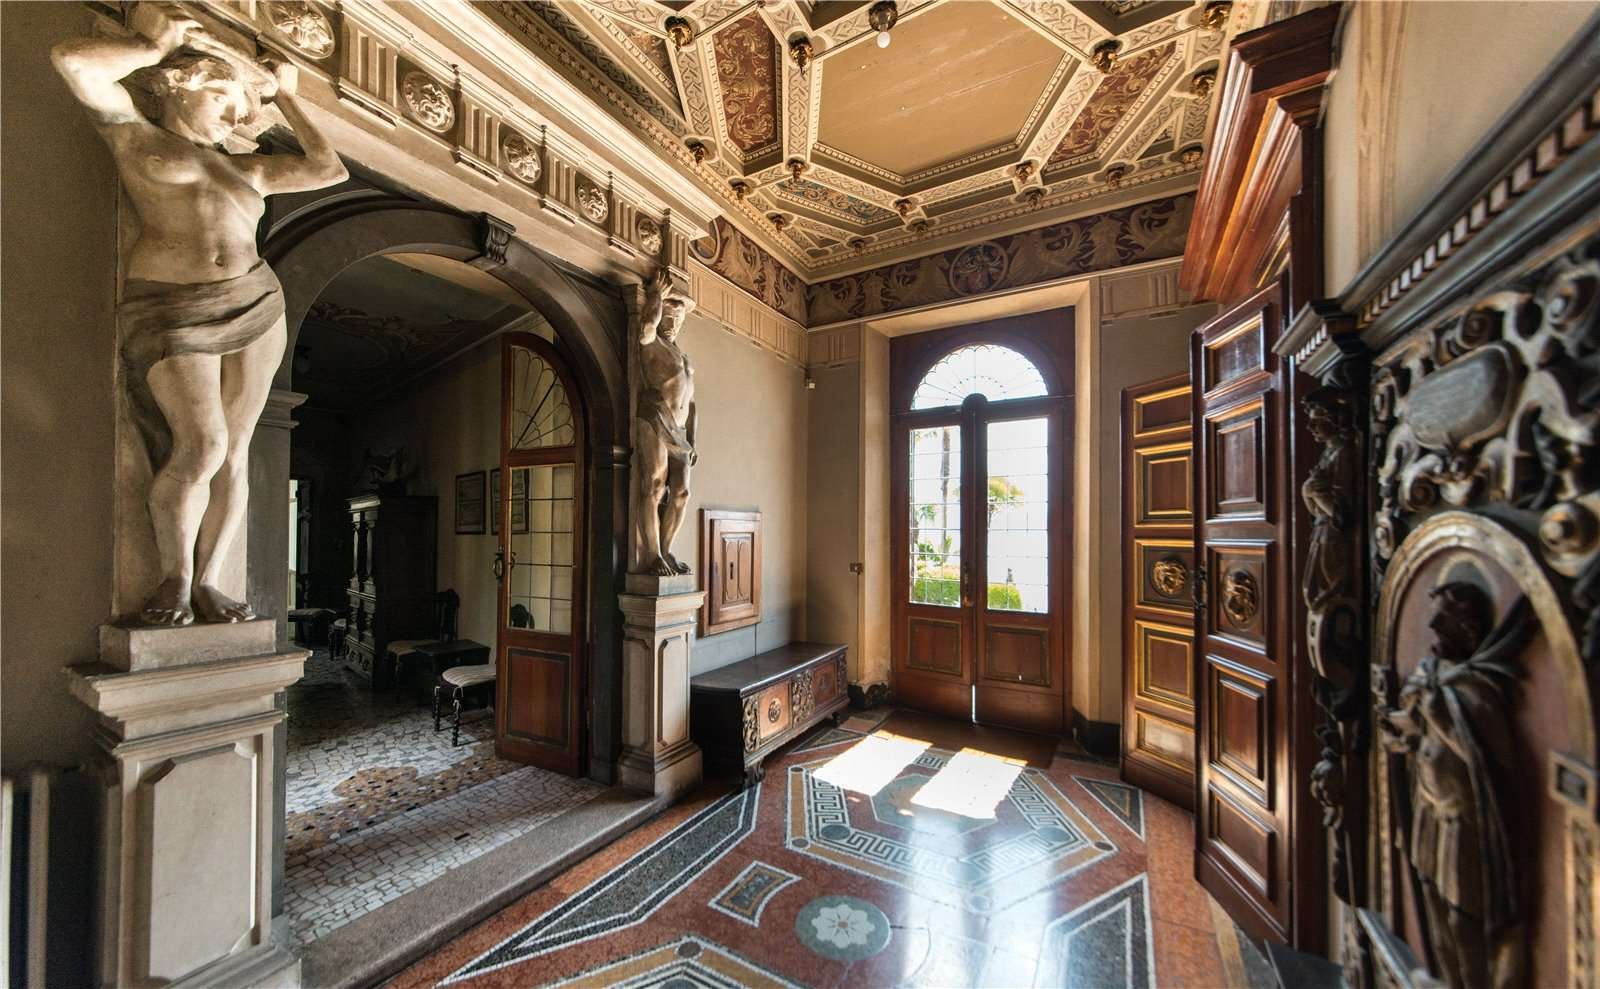 Francis YorkVilla L'Eremitaggio: Historic Villa On Lake Maggiore 5.jpg